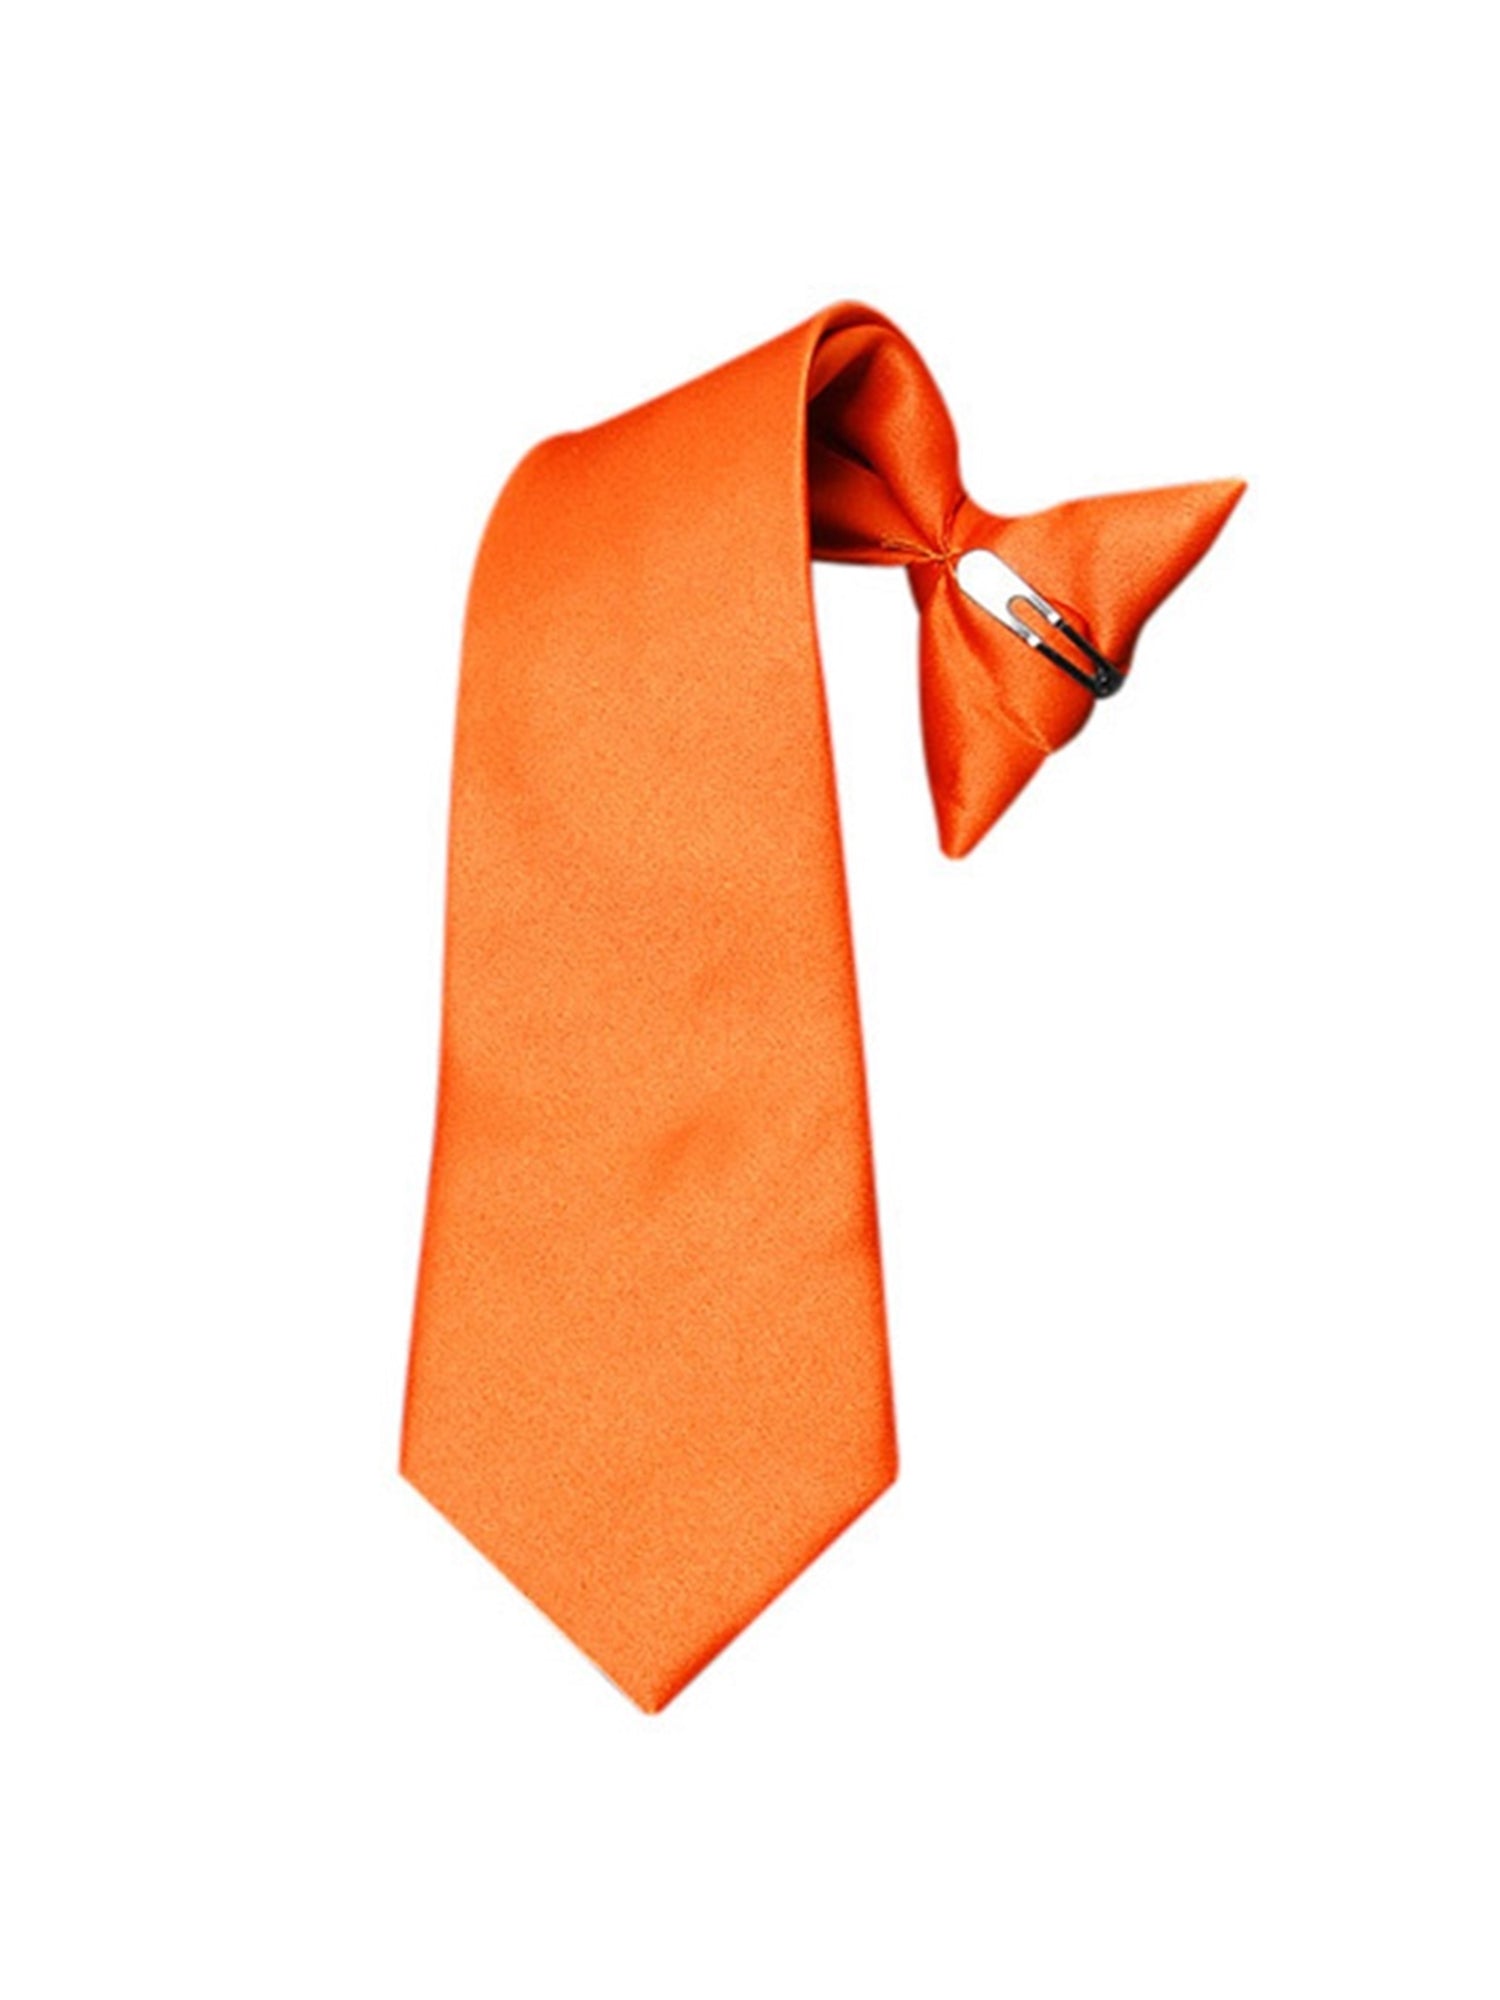 Boy's Solid Color Pre-tied Clip On Neck Tie Neck Tie TheDapperTie Orange 8" x 2.5" 